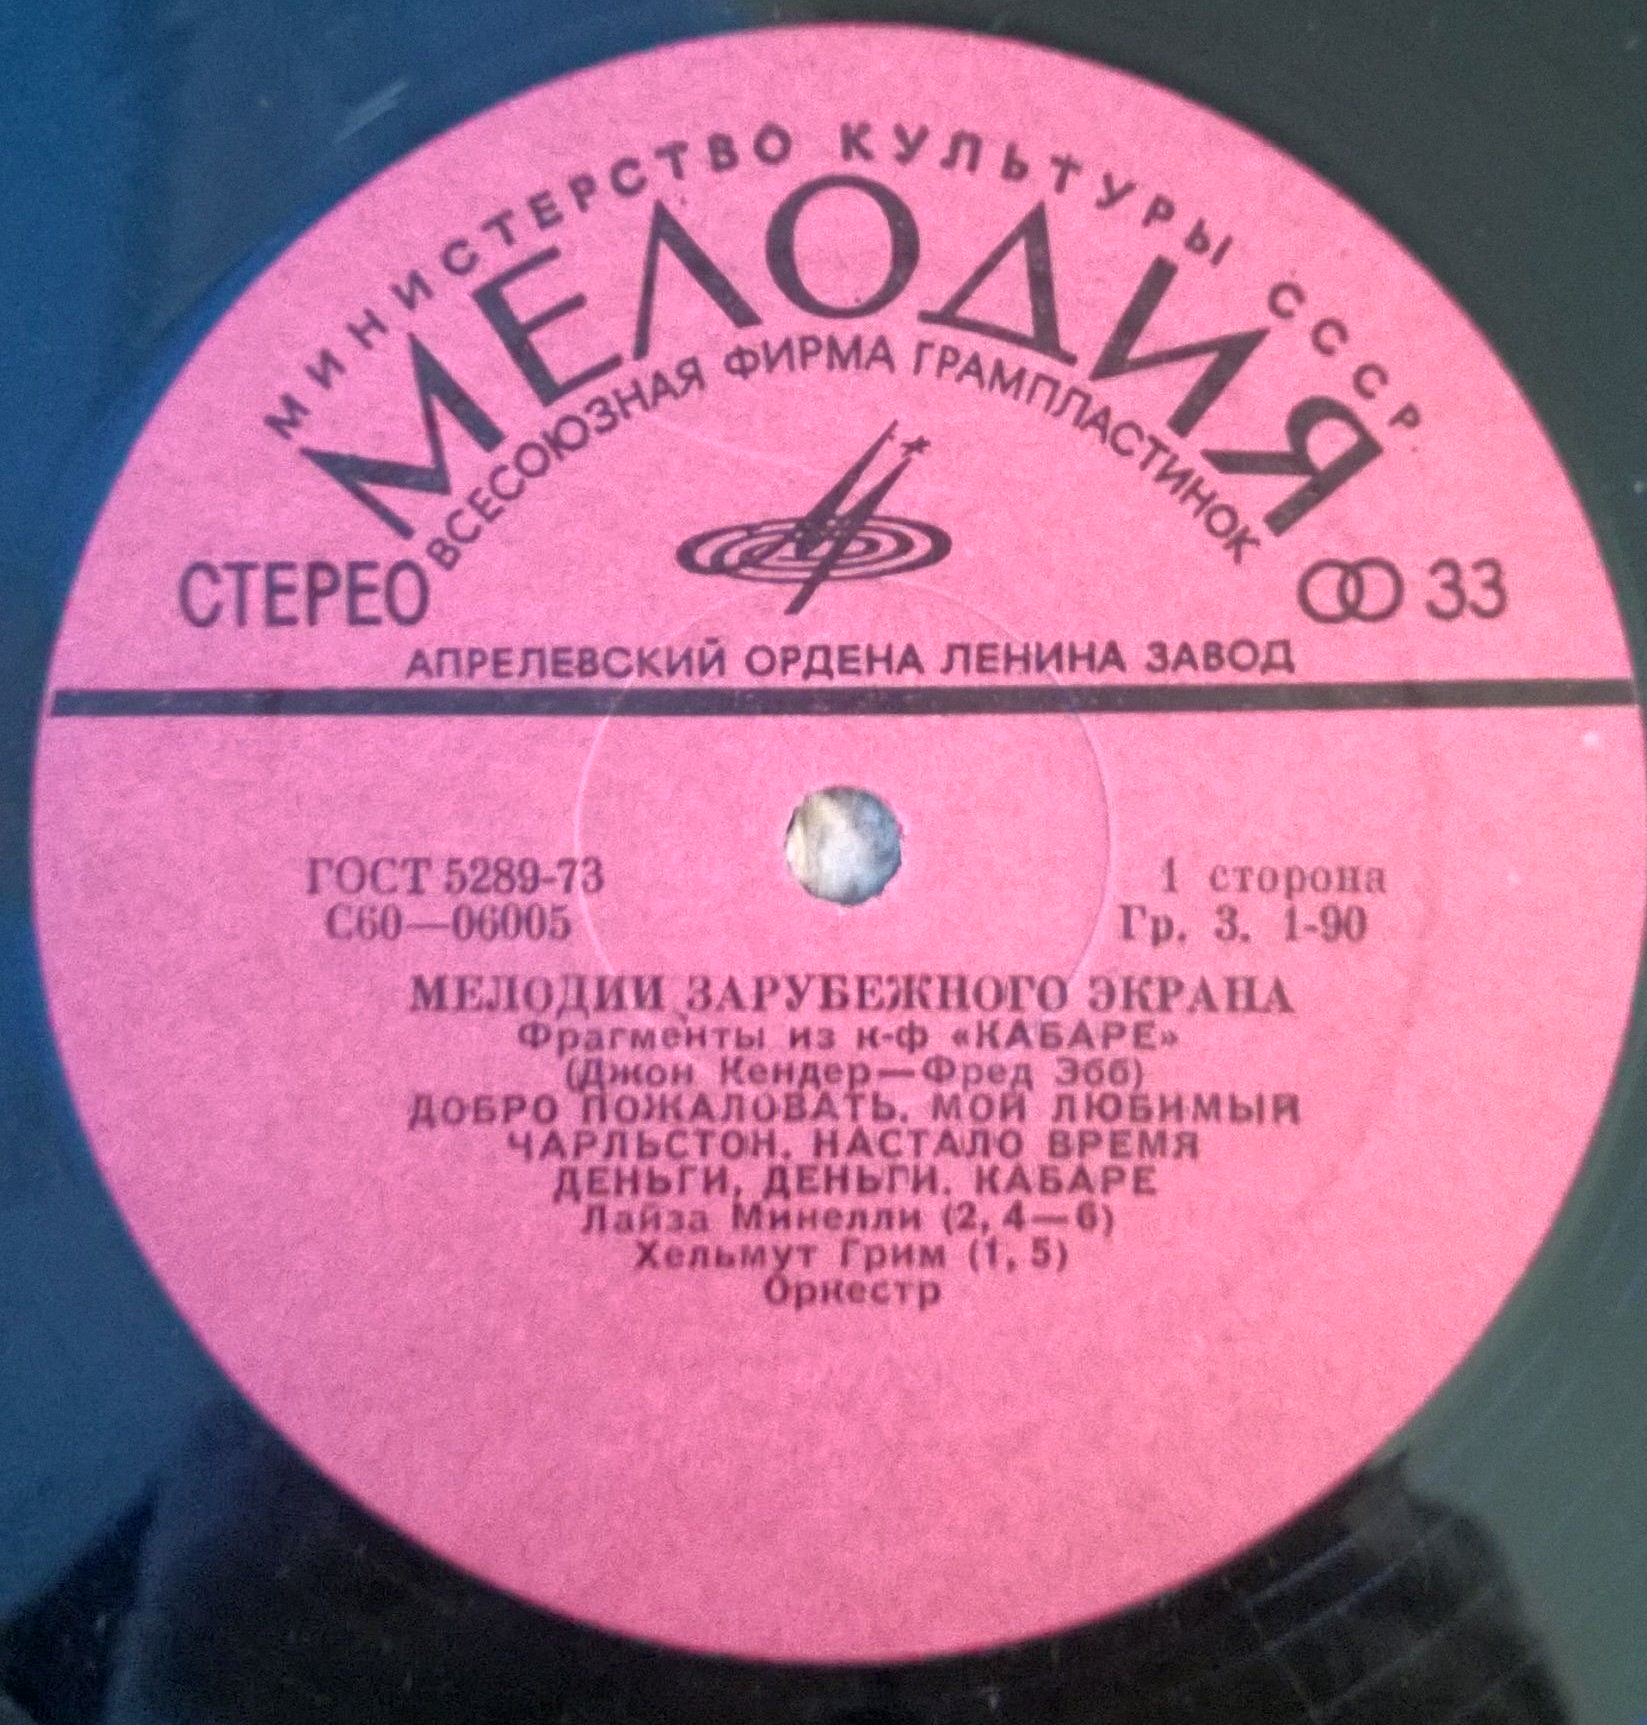 Лайза Минелли 1978. Мелодии зарубежной эстрады. Английская группа пластинка на мелодии в 1978 году.